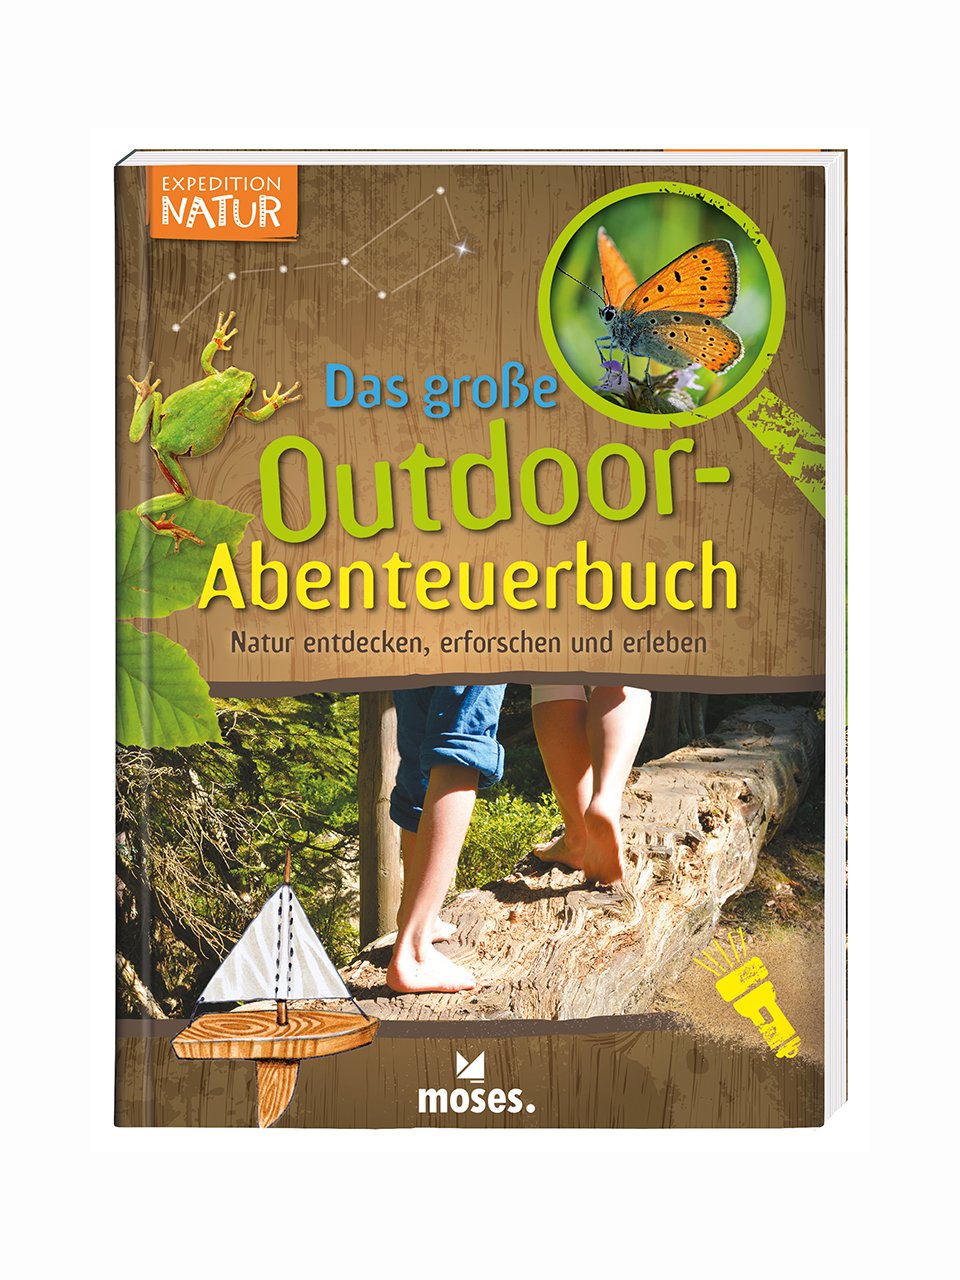 Das große Outdoor-Abenteuerbuch (Expedition Natur)